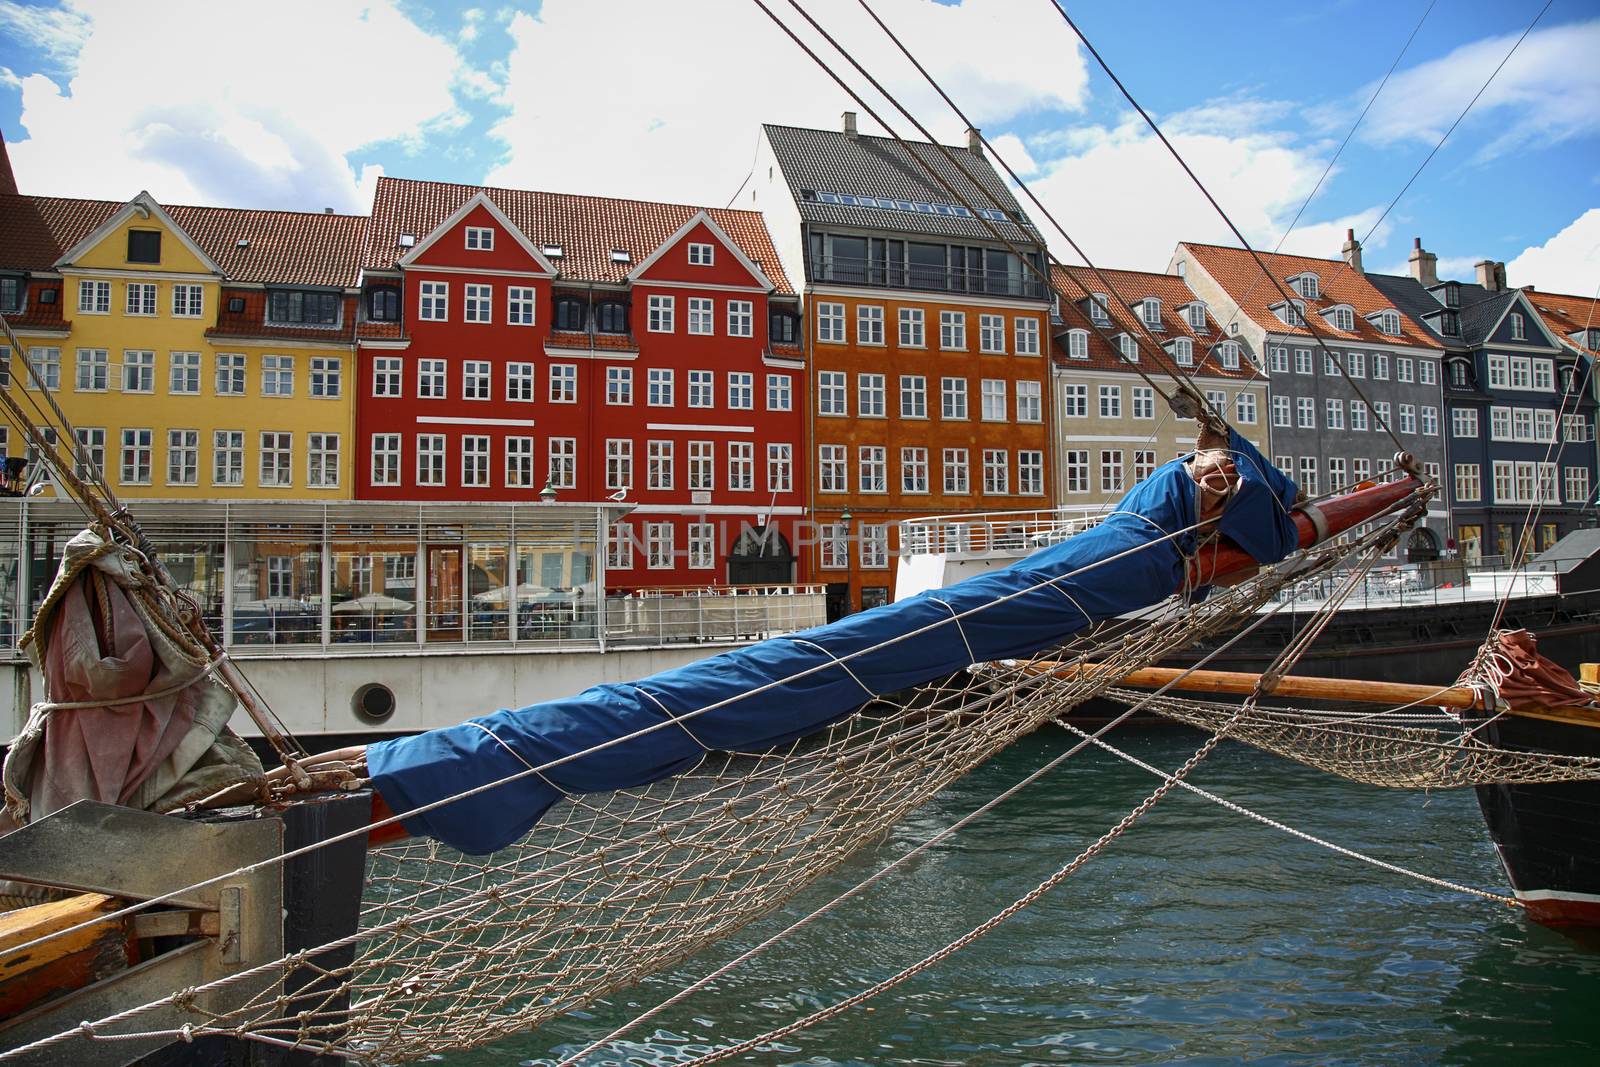 Nyhavn (new Harbor) in Copenhagen, Denmark by vladacanon